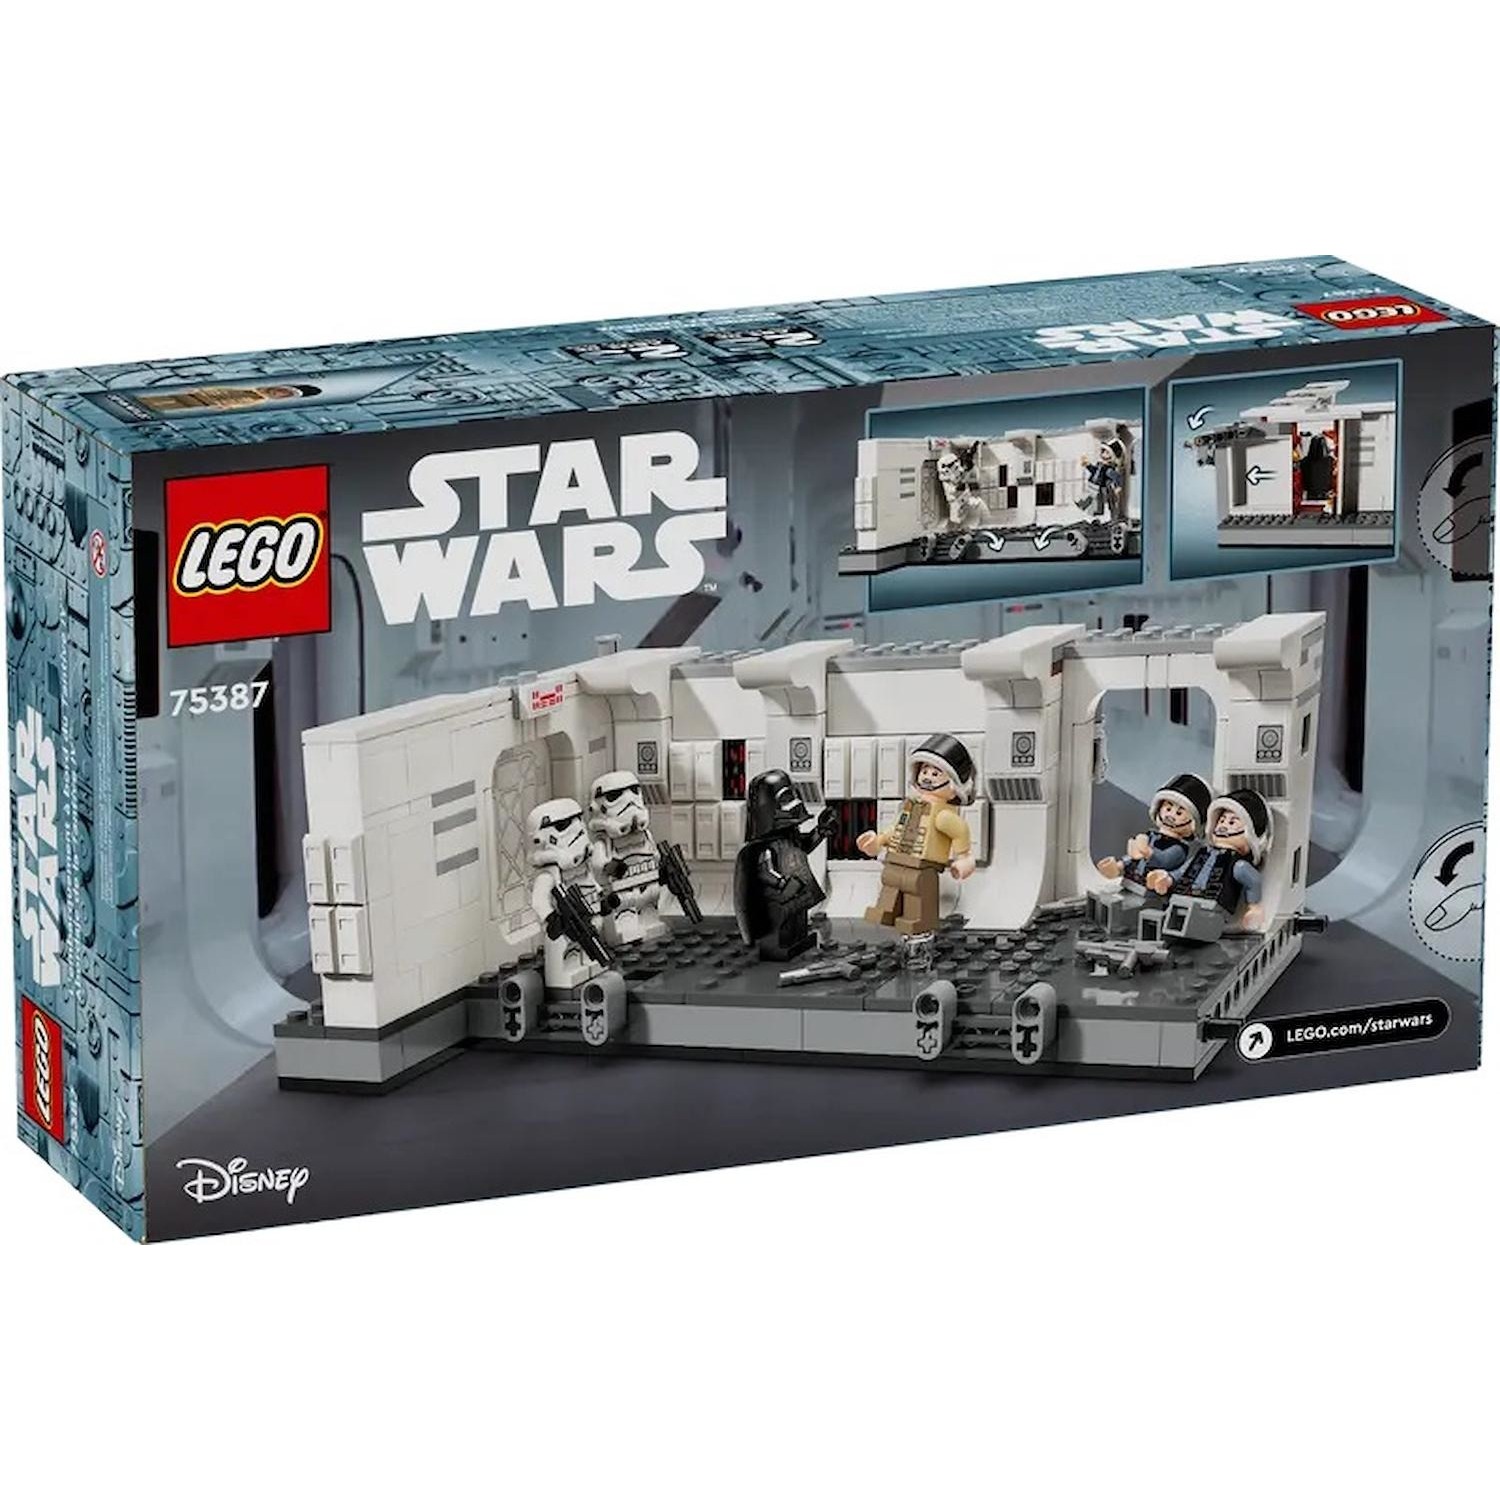 Immagine per Lego Star Wars Imbarco sulla Tantative IV da DIMOStore